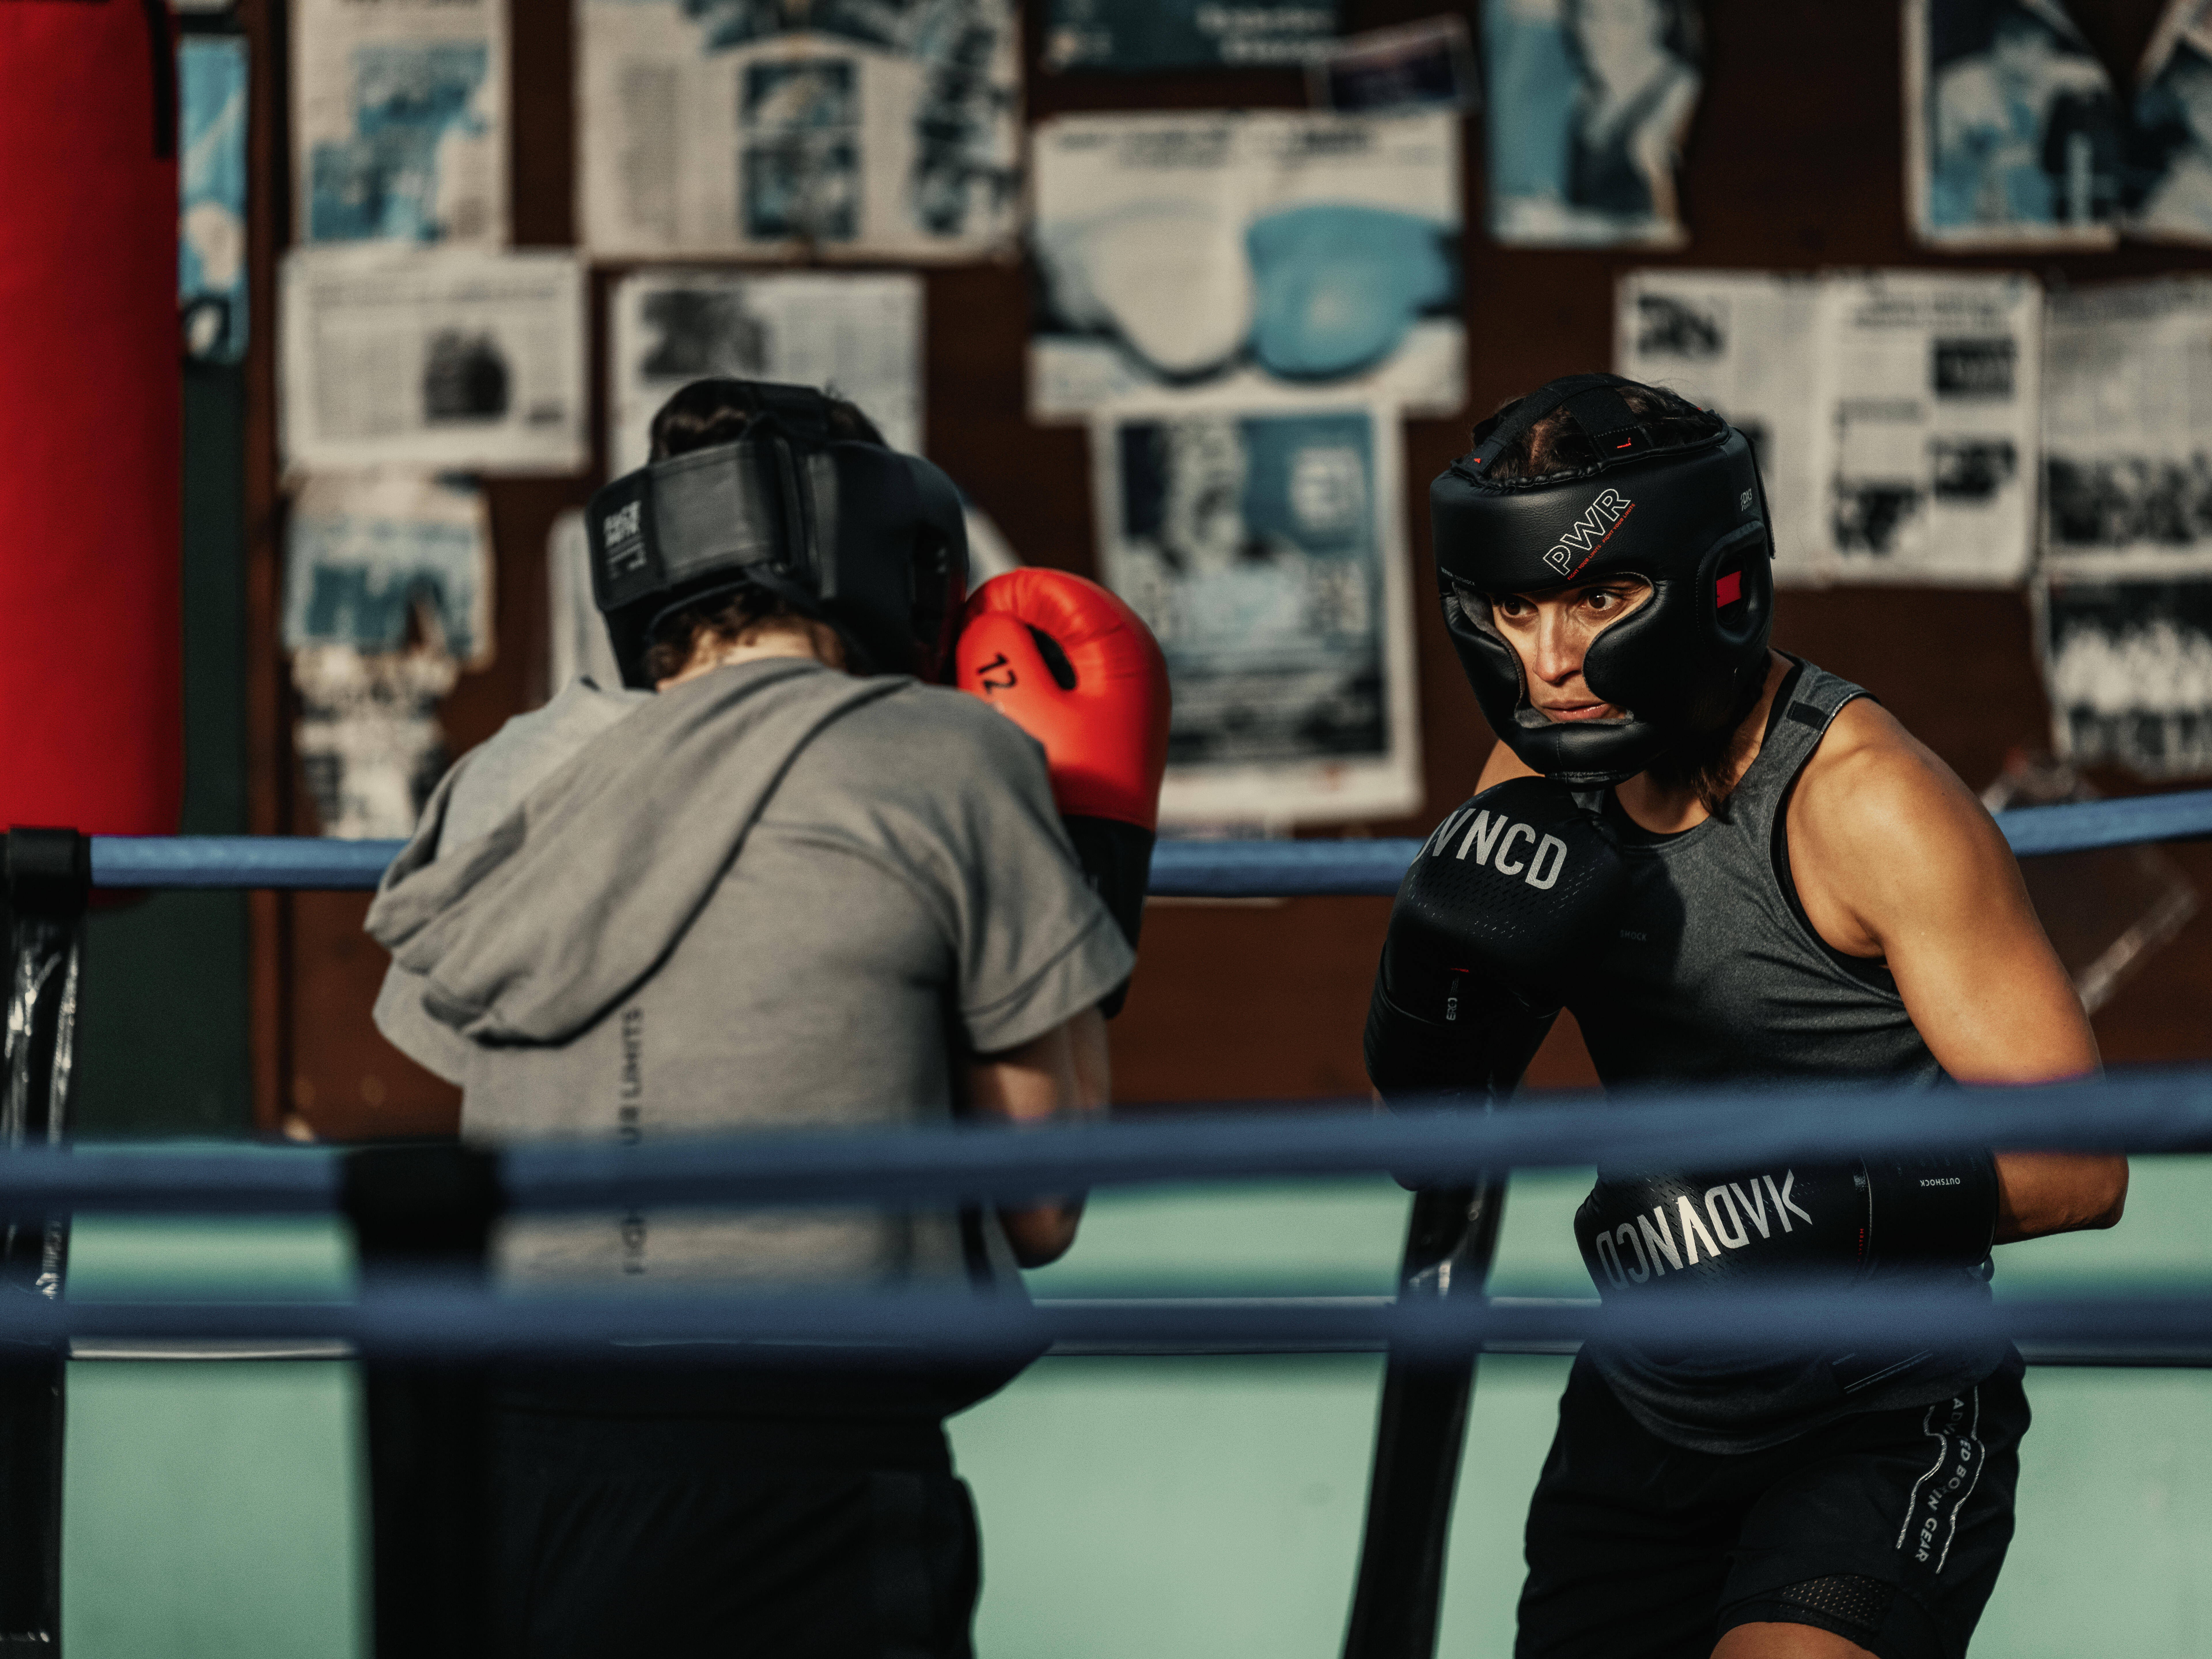 Apprendre à boxer : débuts, matériel et nutrition